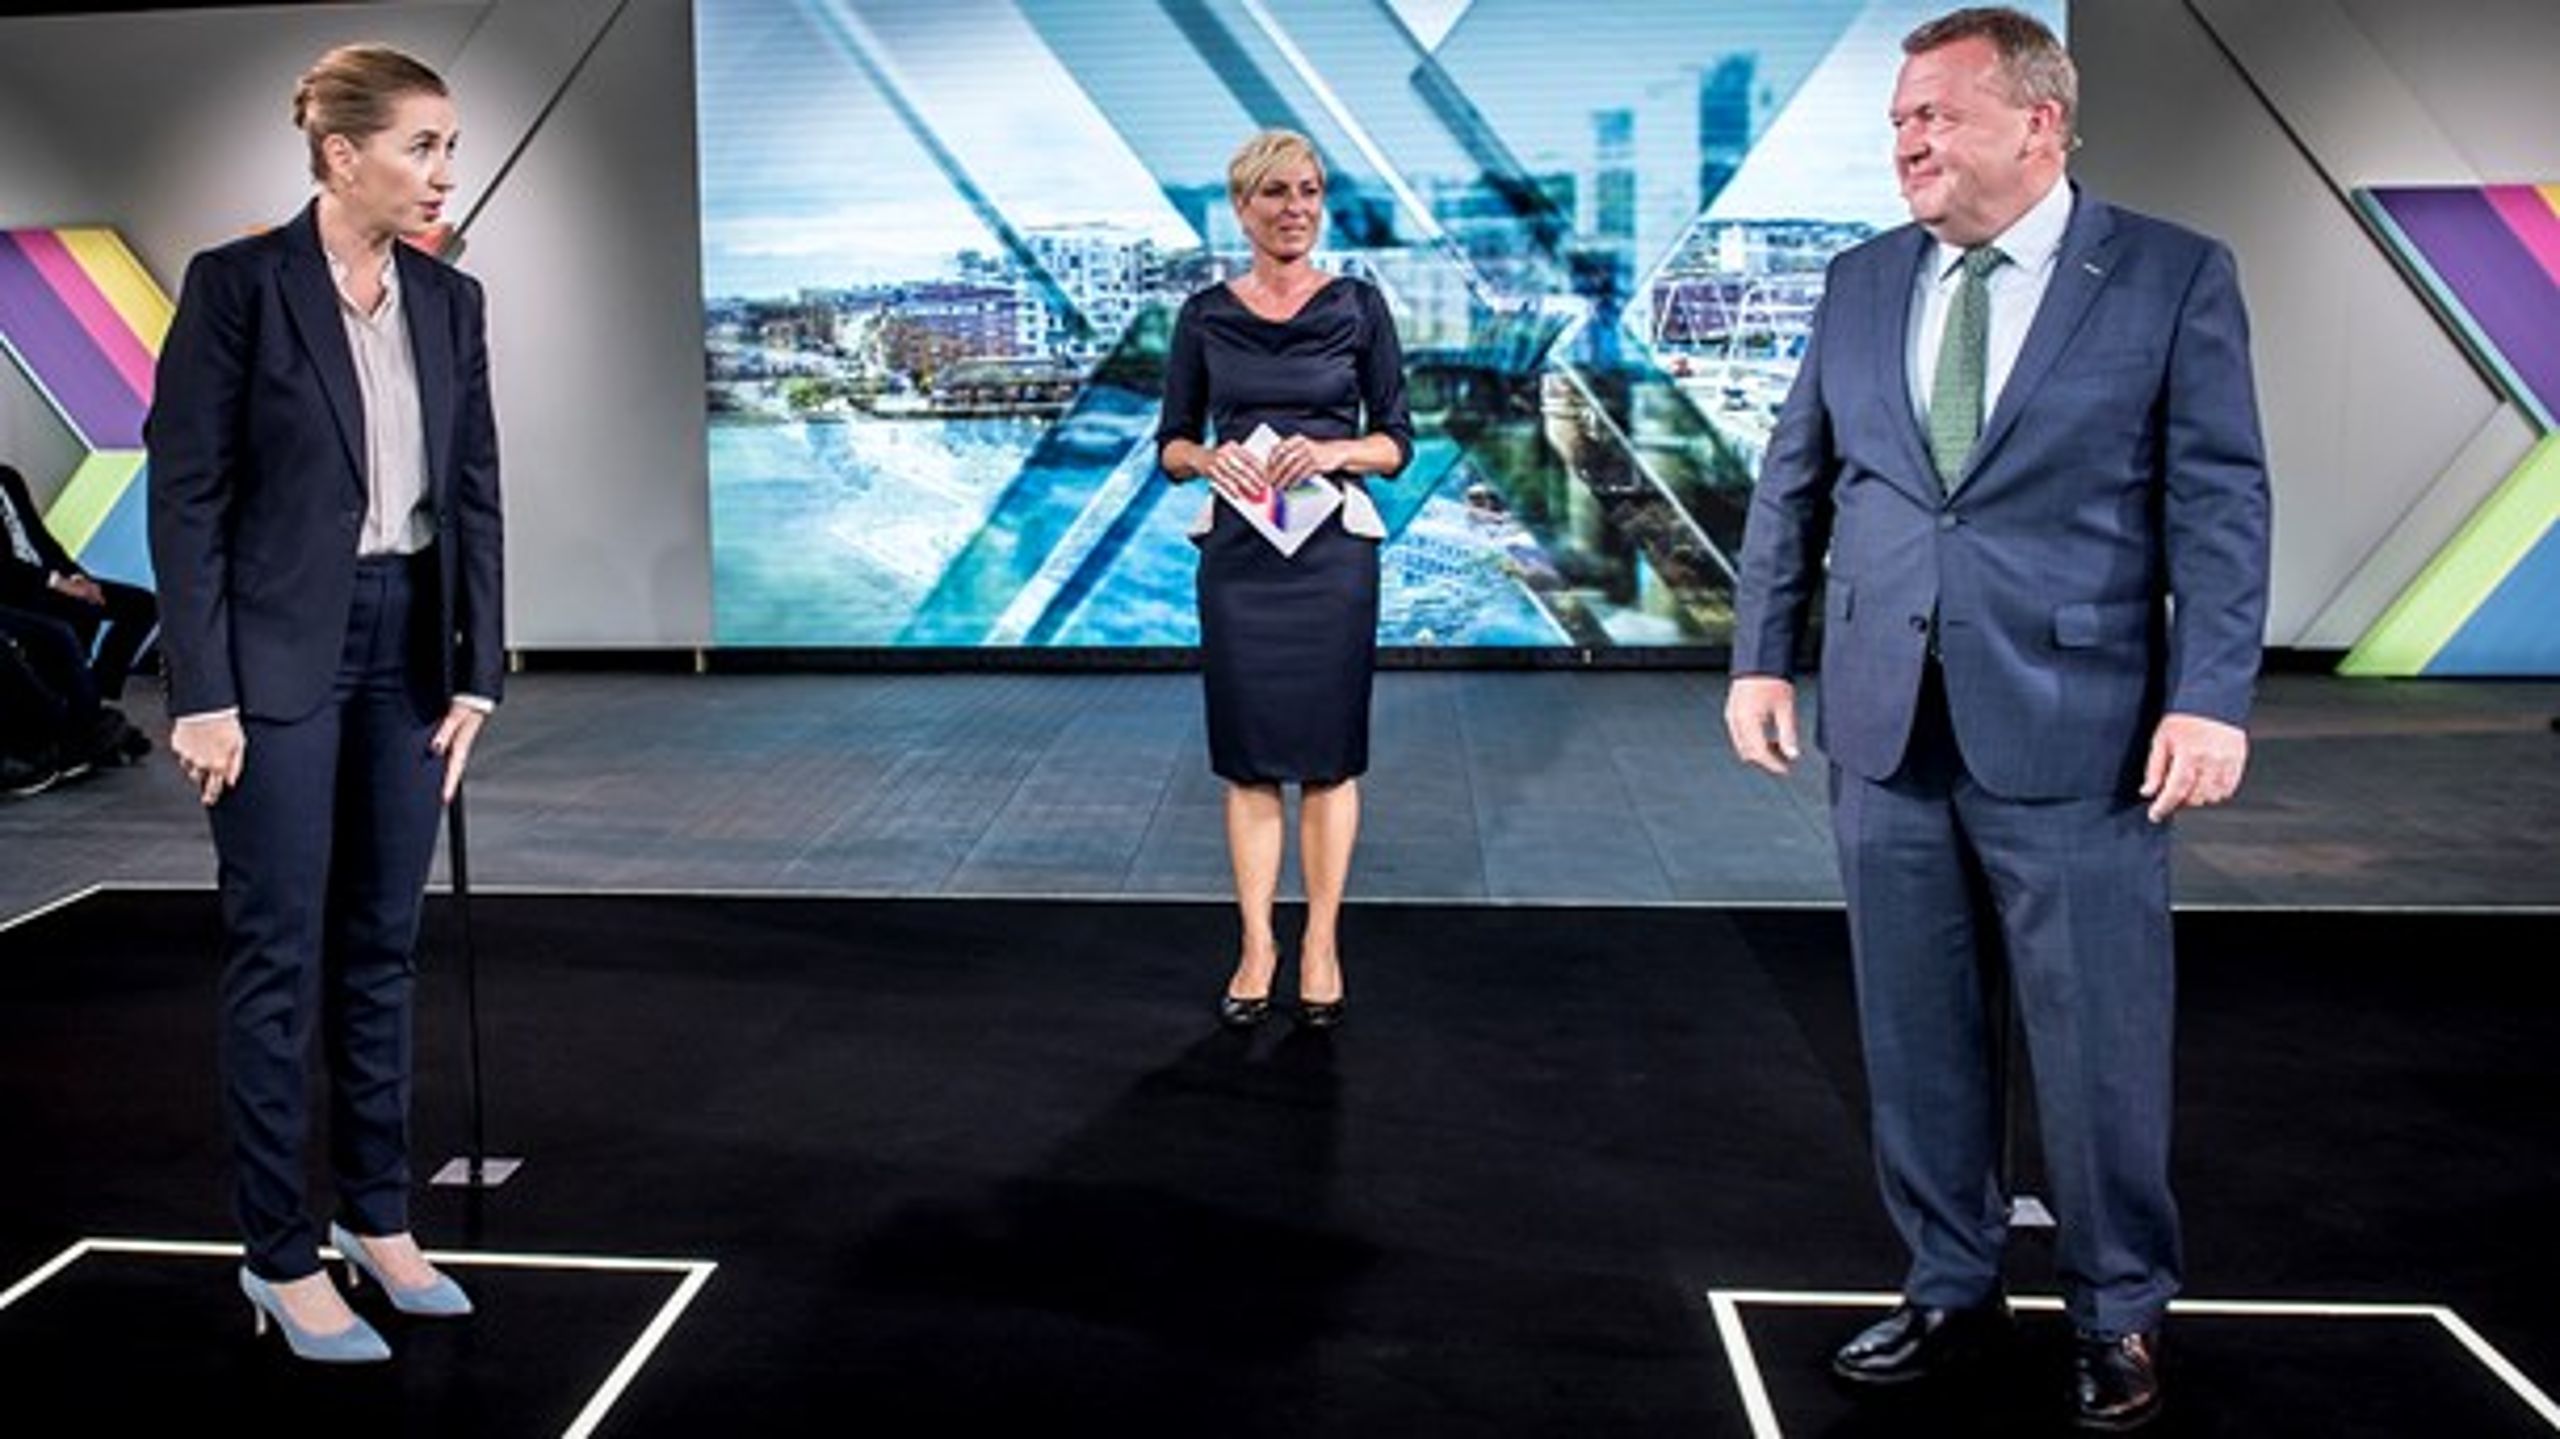 Thorning-regeringen efterlod et økonomisk underskud på 50,3 milliarder kroner, da Venstre overtog regeringsmagten i 2015, sagde Lars Løkke Rasmussen (V) under valgduel på TV2 søndag den 19. maj.